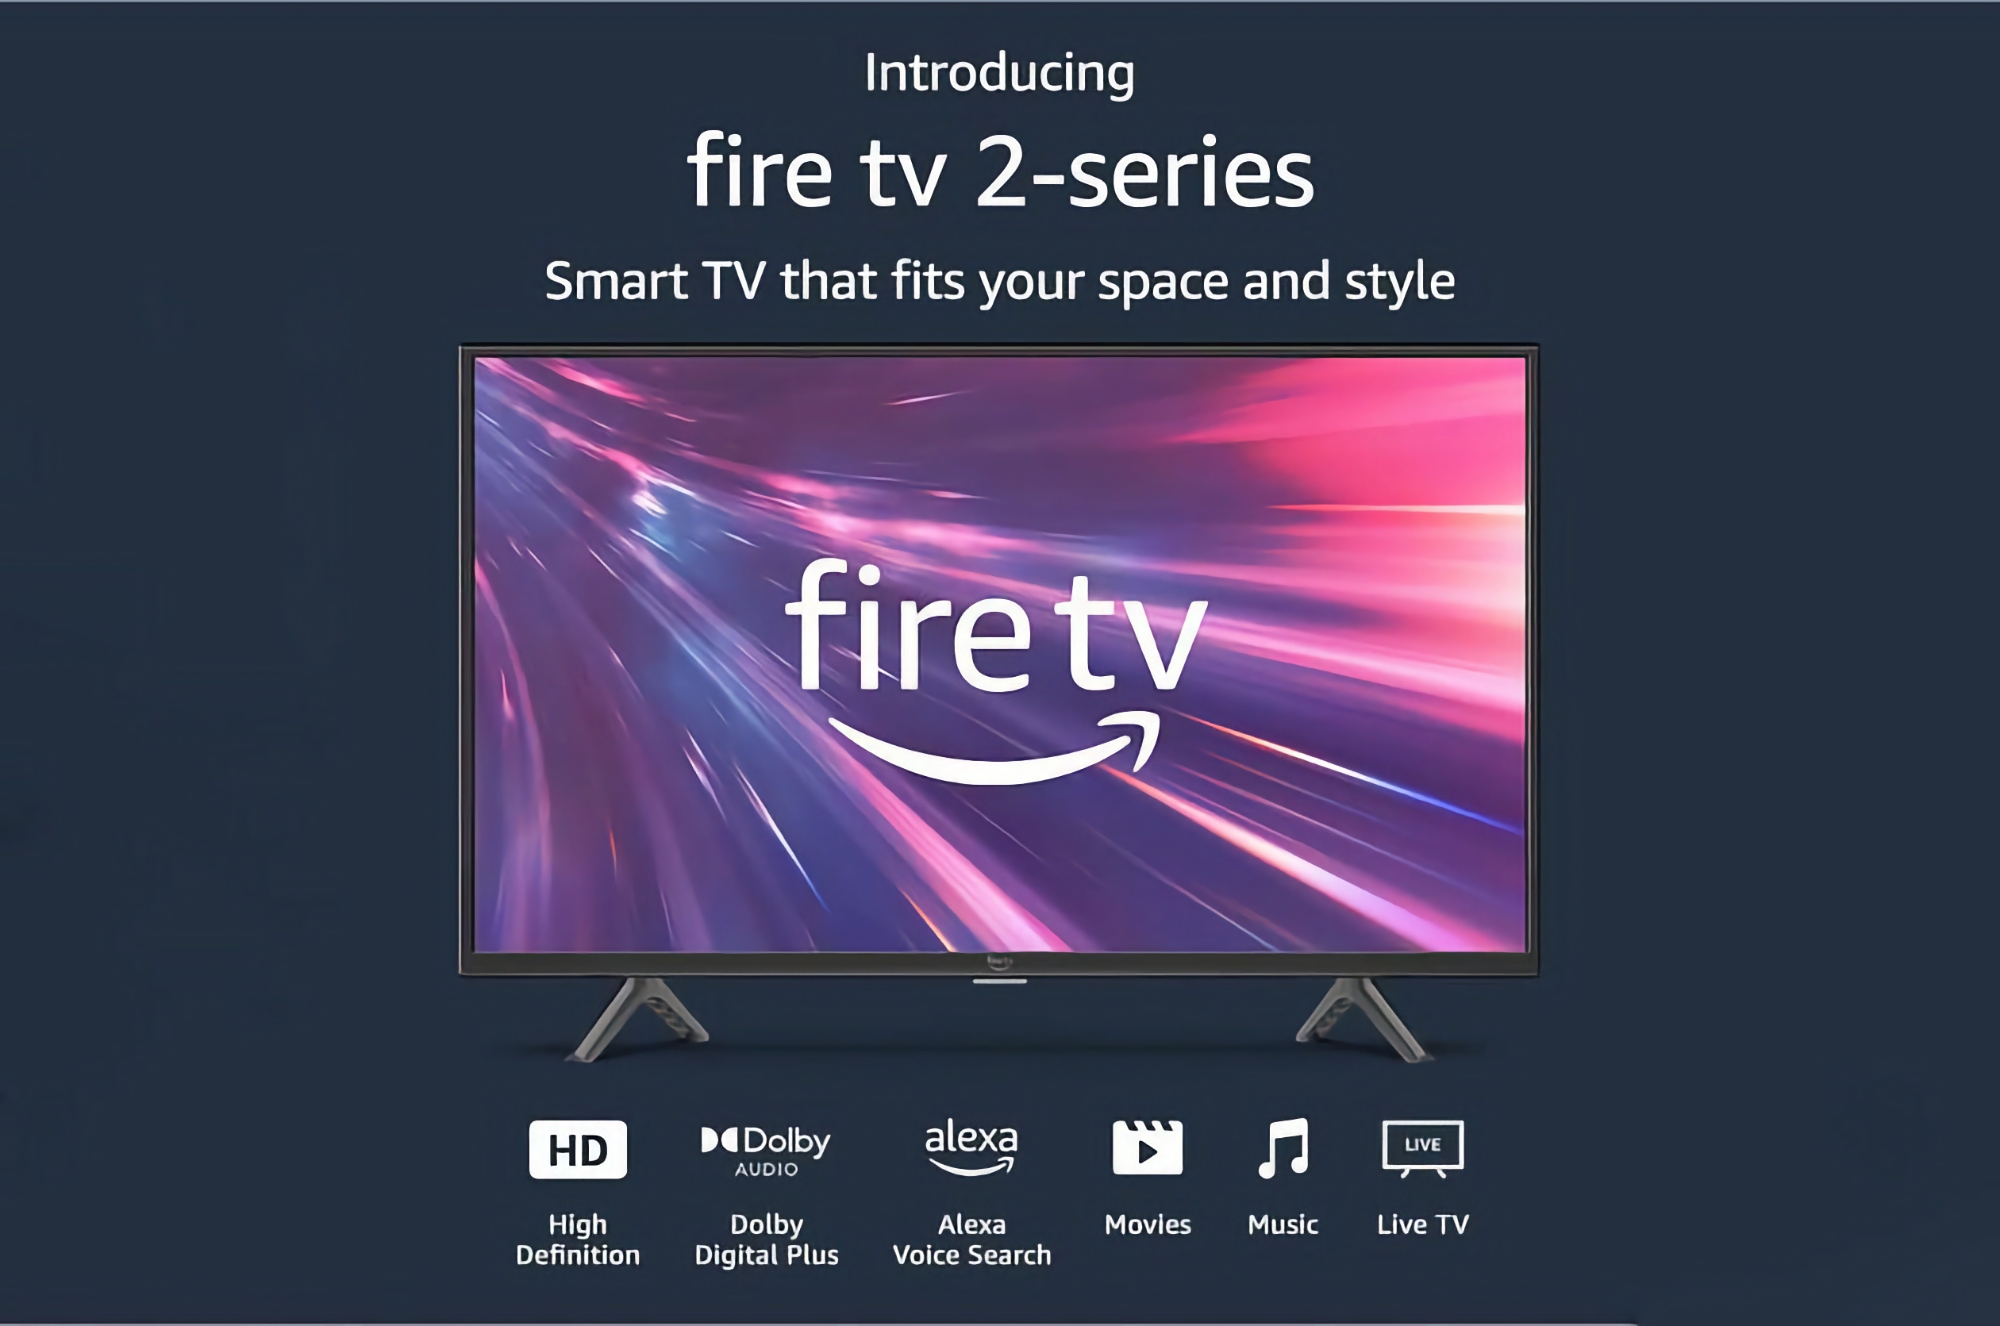 Amazon Fire TV 2 з екраном на 32 дюйми зі знижкою 40%